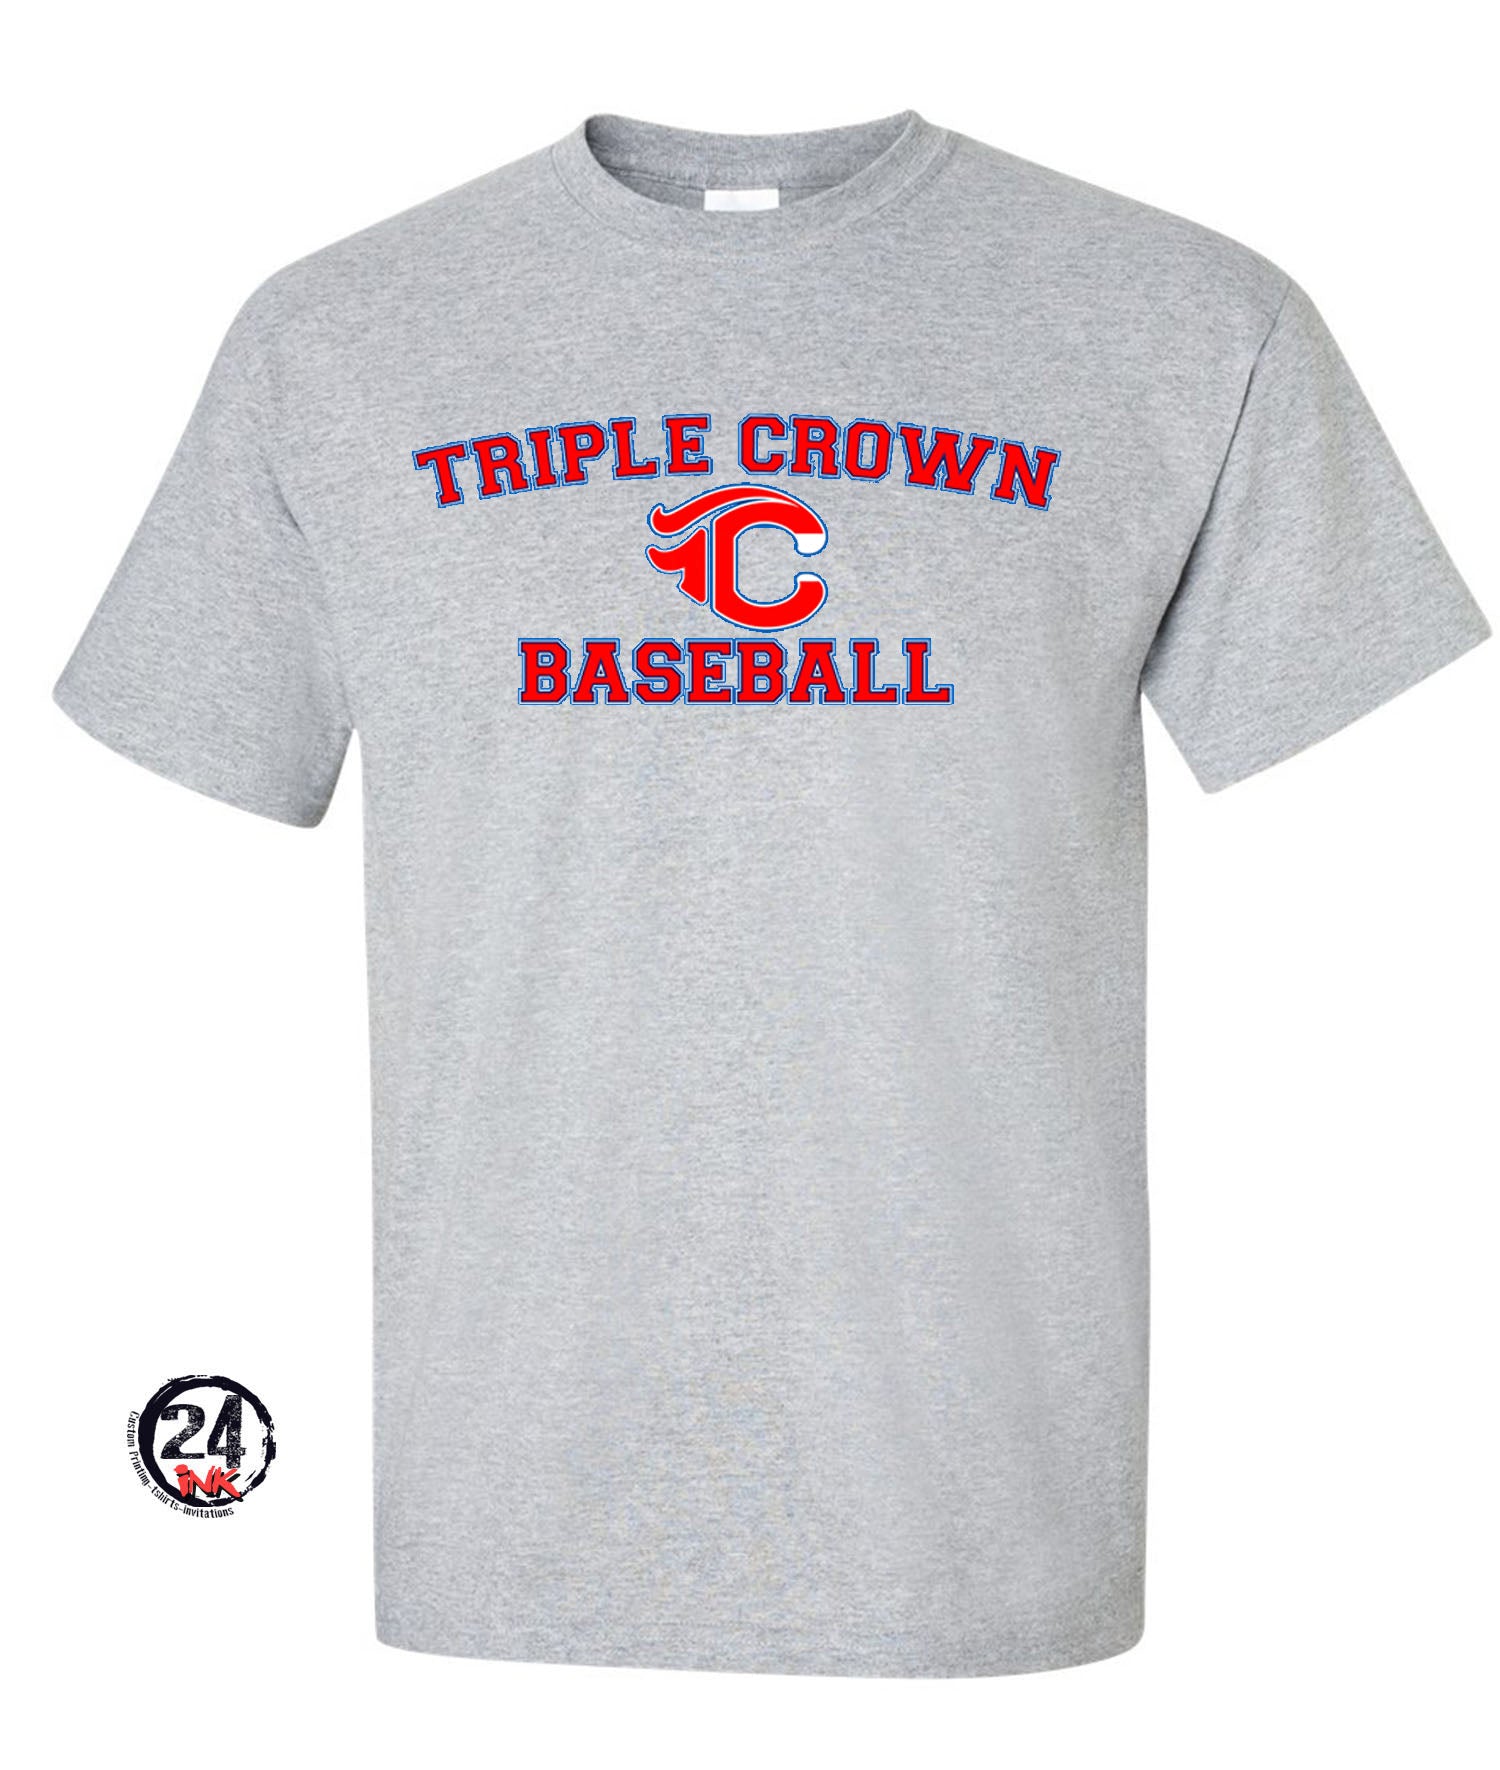 Triple Crown T-shirt